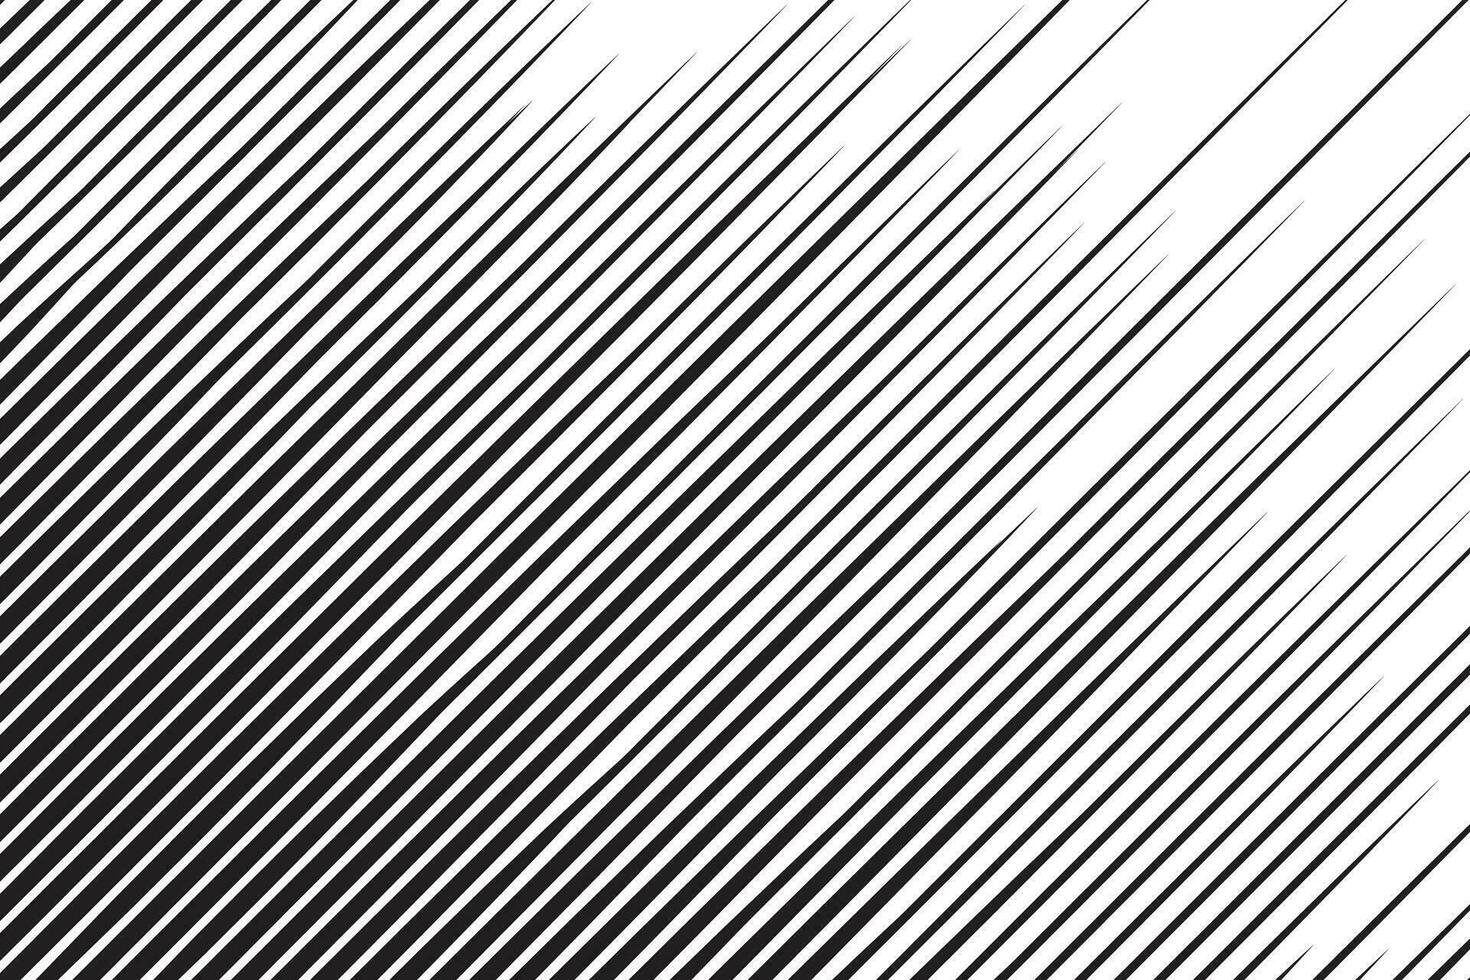 hand- getrokken grappig abstract beweging snelheid lijn zoom effect achtergrond vector